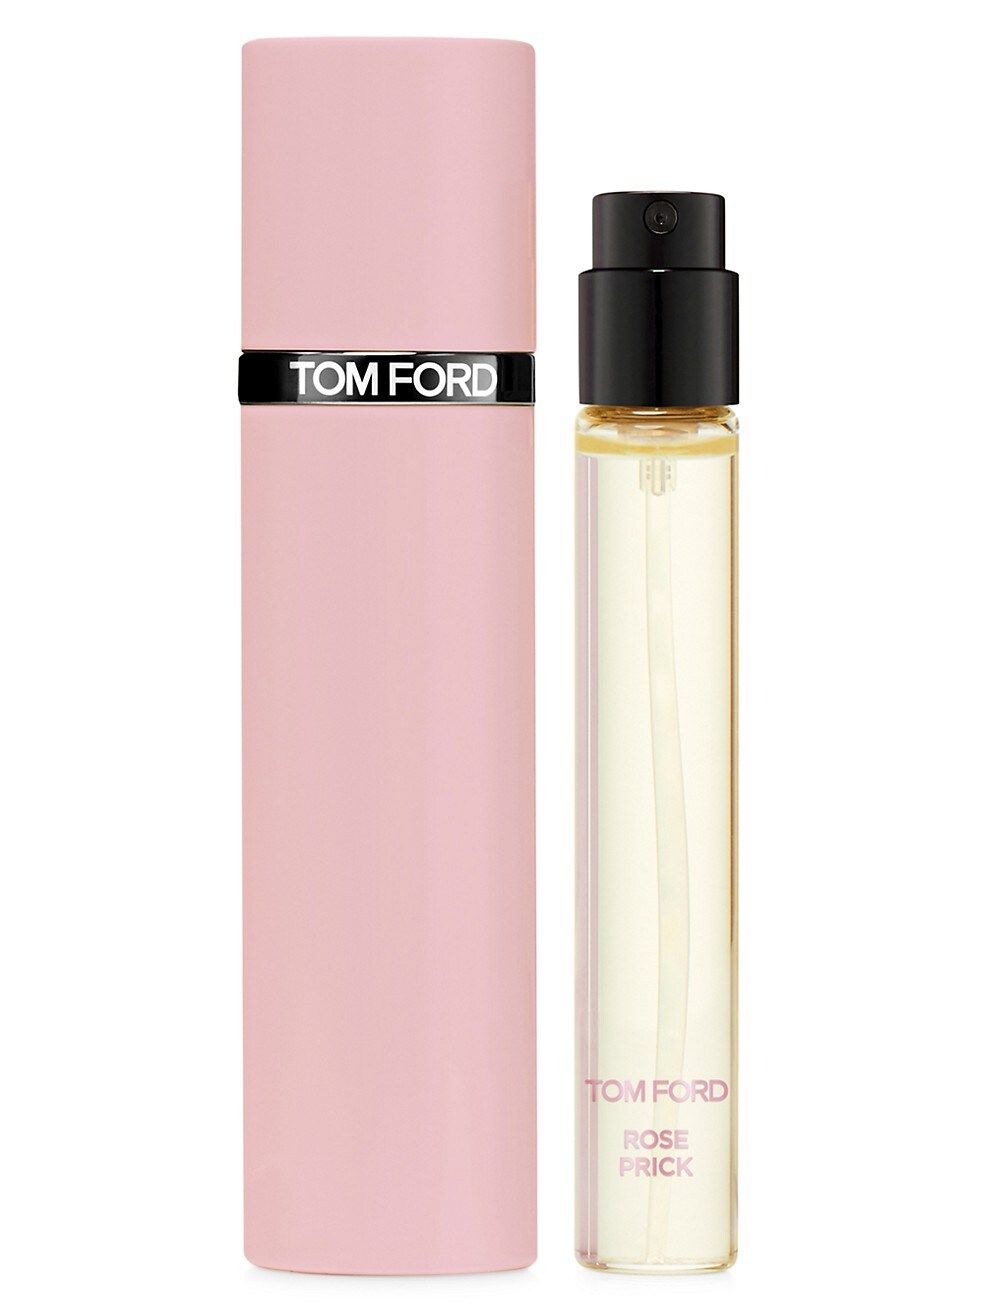 Tom Ford Rose Prick Eau de Parfum Travel Spray | Saks Fifth Avenue